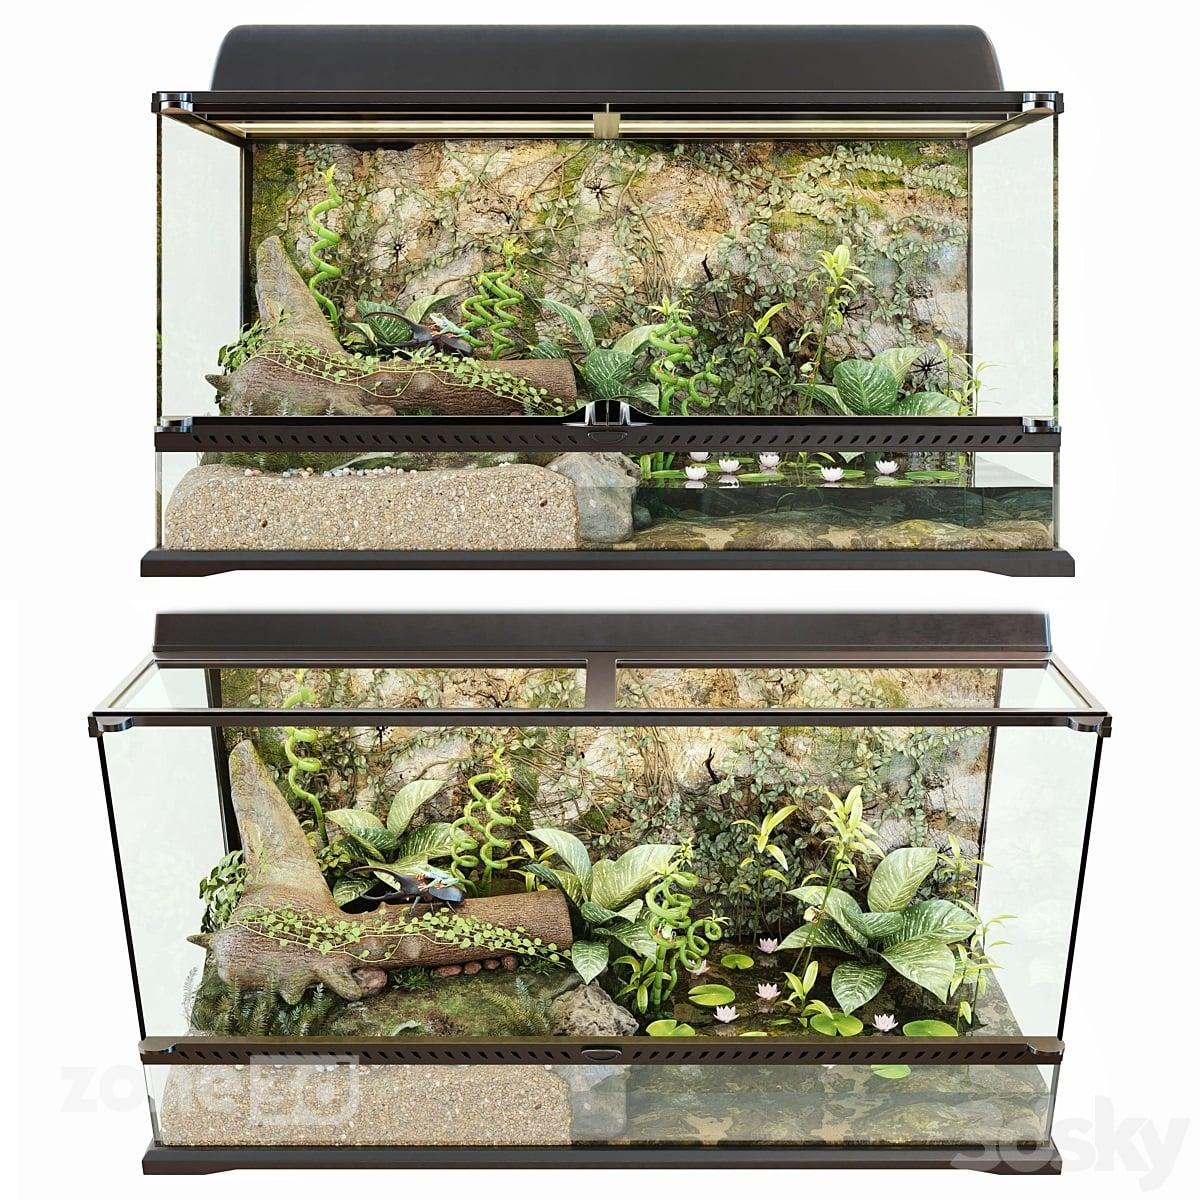 آبجکت تراریوم مدرن خانگی با بدنه شیشه ای به همراه گیاه و موجودات آبزی